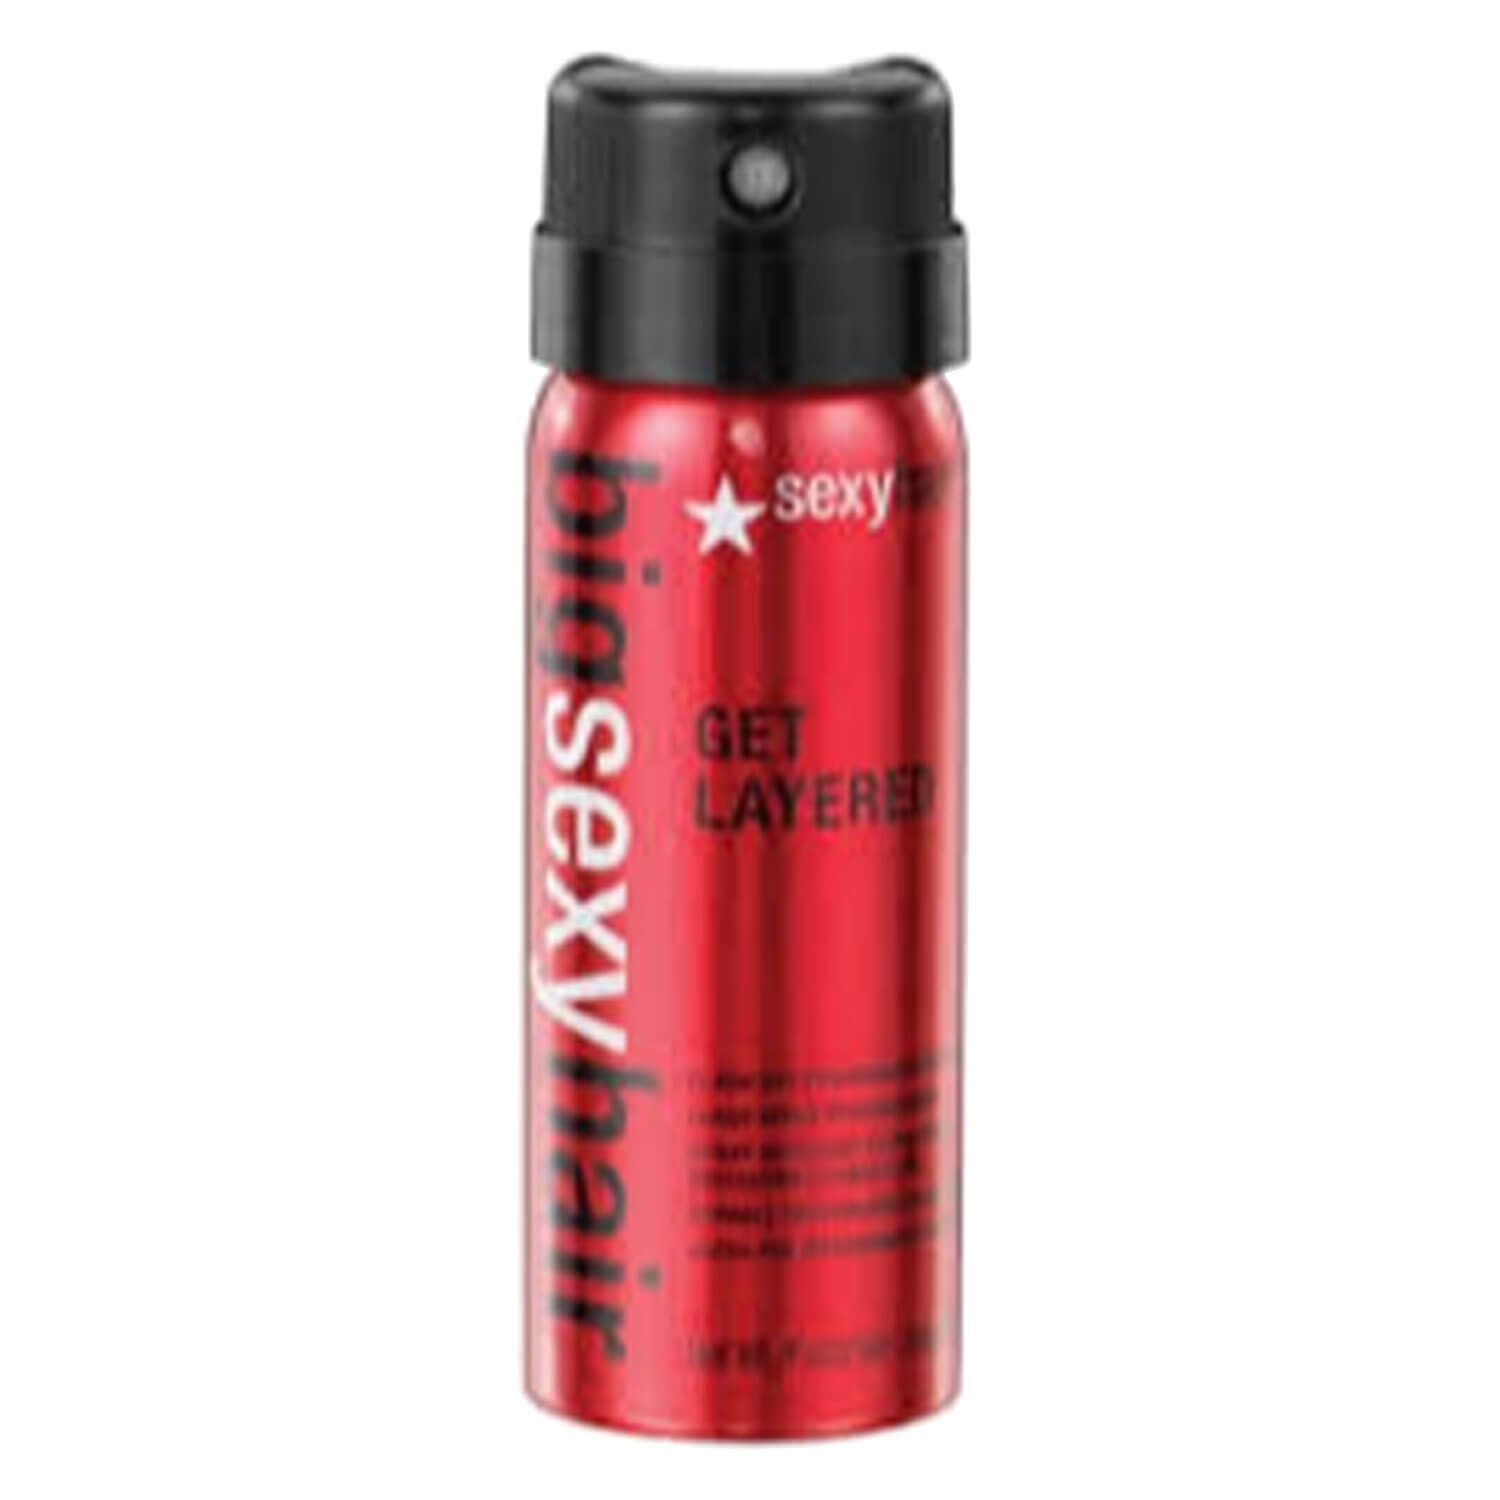 Produktbild von Big Sexy Hair - Get Layered Flash Dry Thickening Hairspray Mini